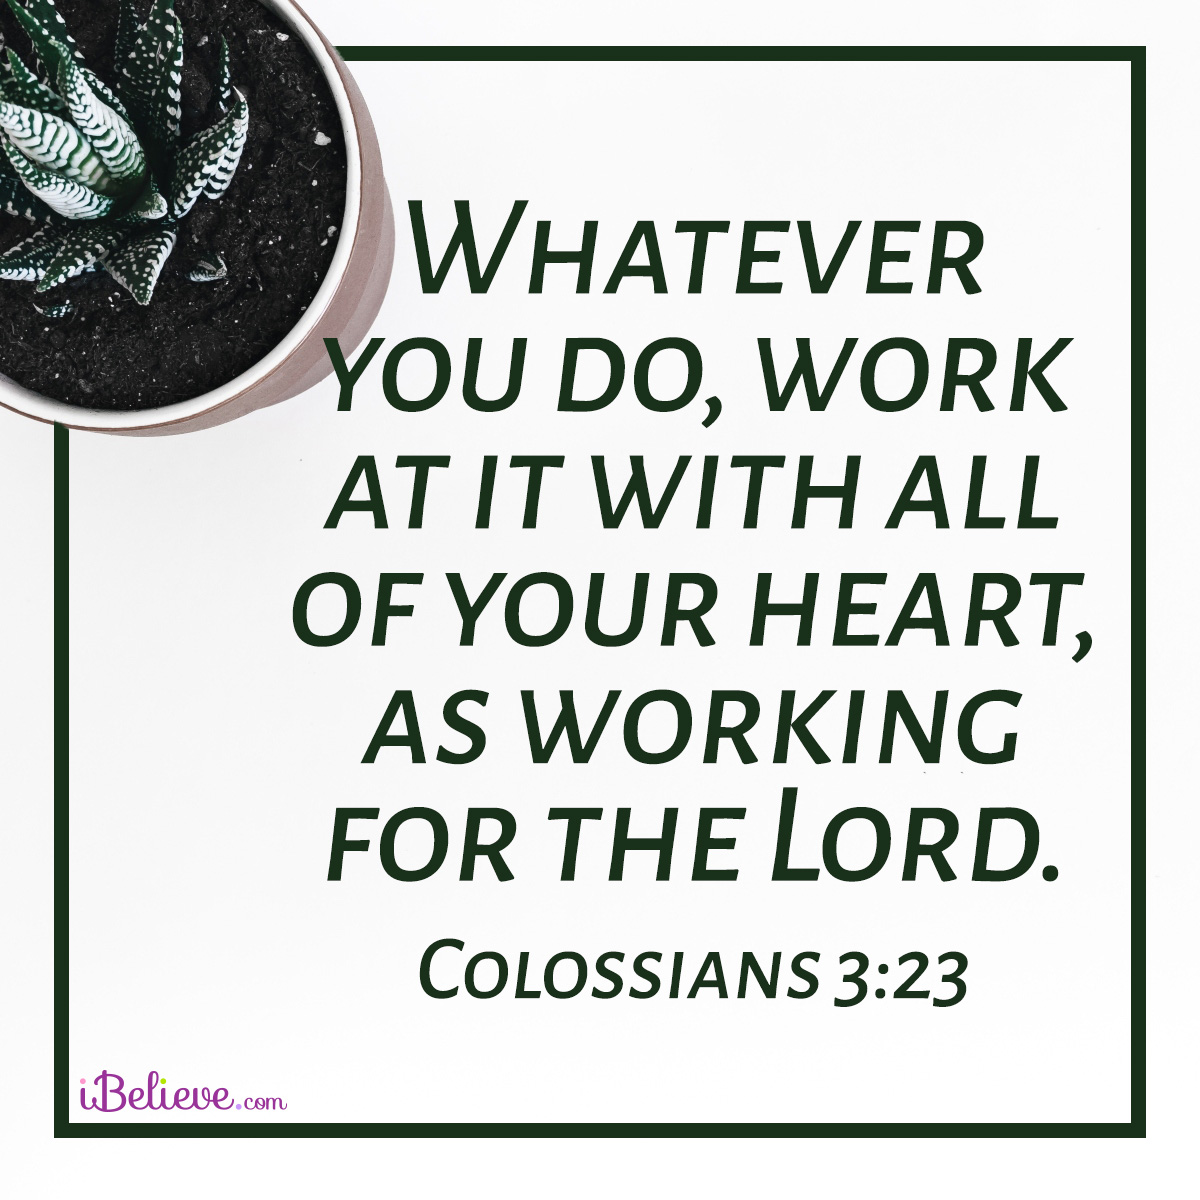 Colossians 3:23 sq